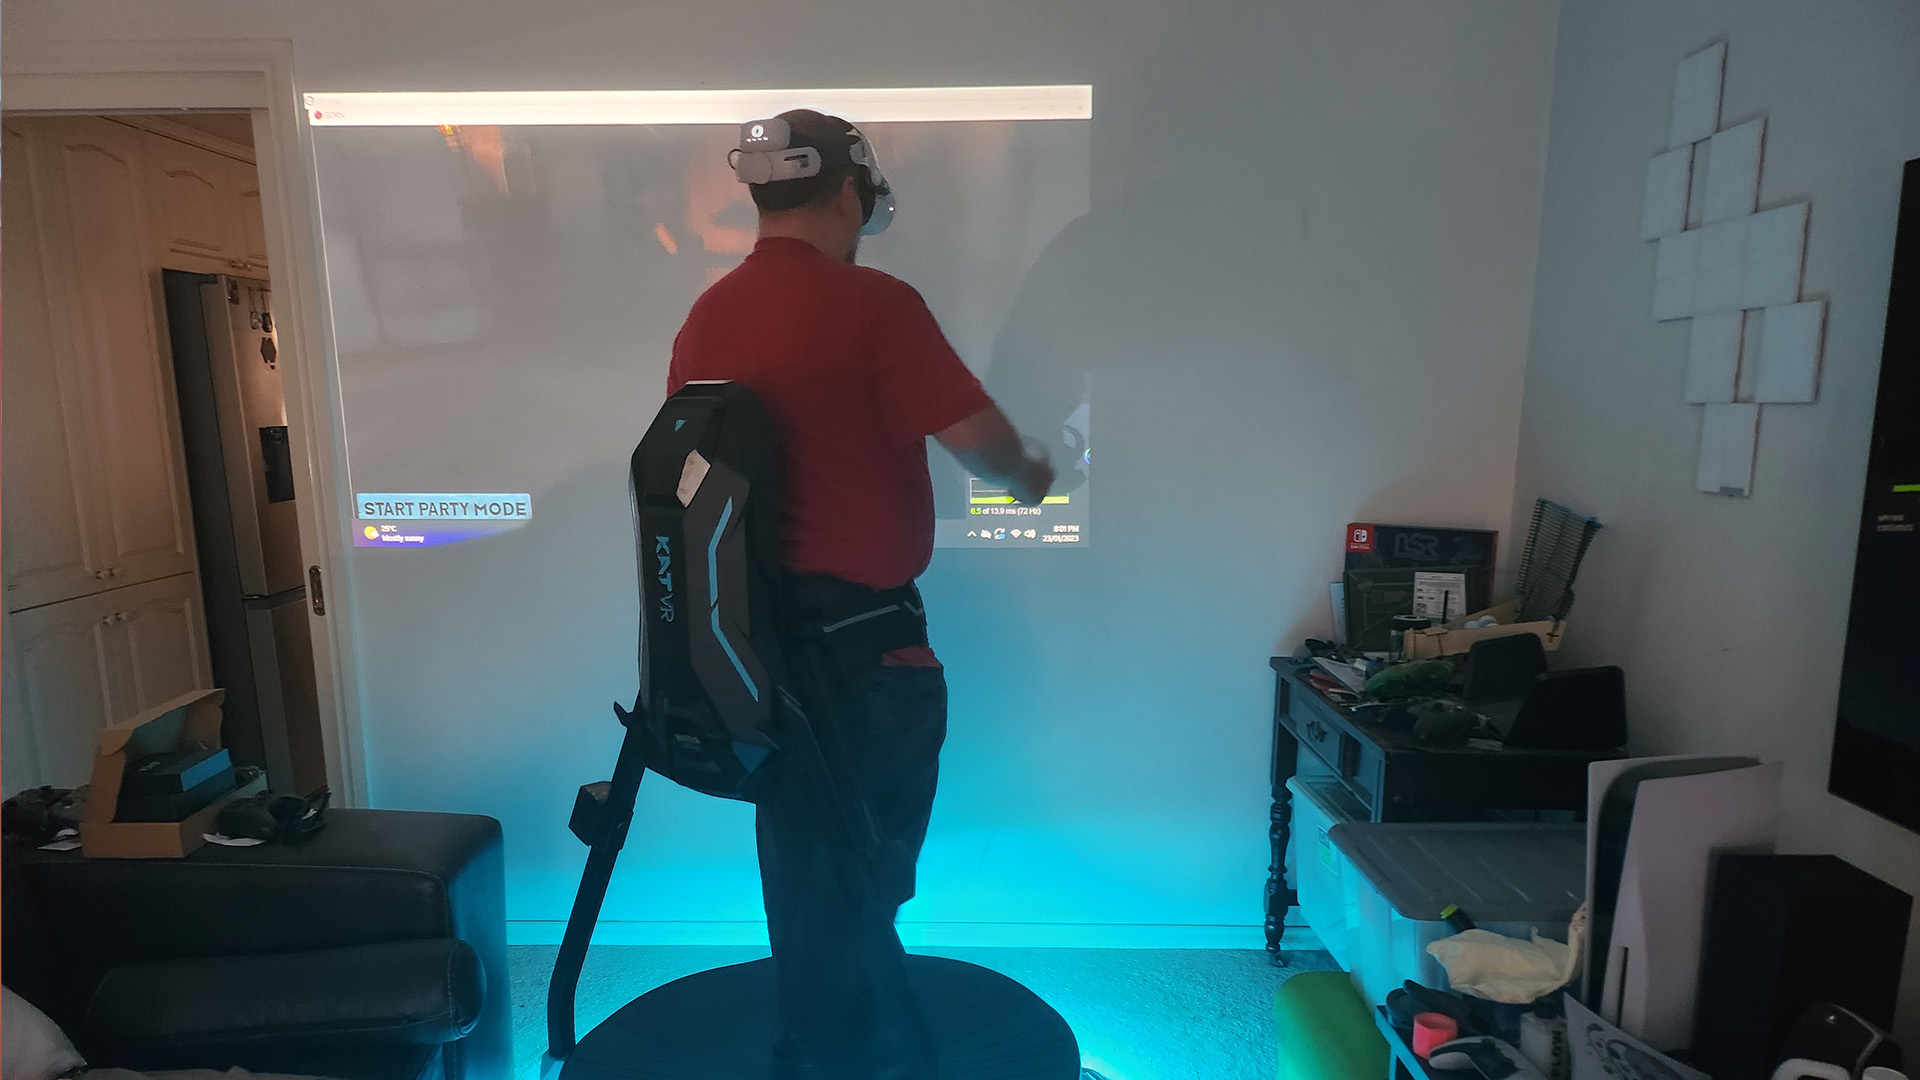 İlk zamanlayıcılar tarafından kullanılan Kat VR koşu bandı.